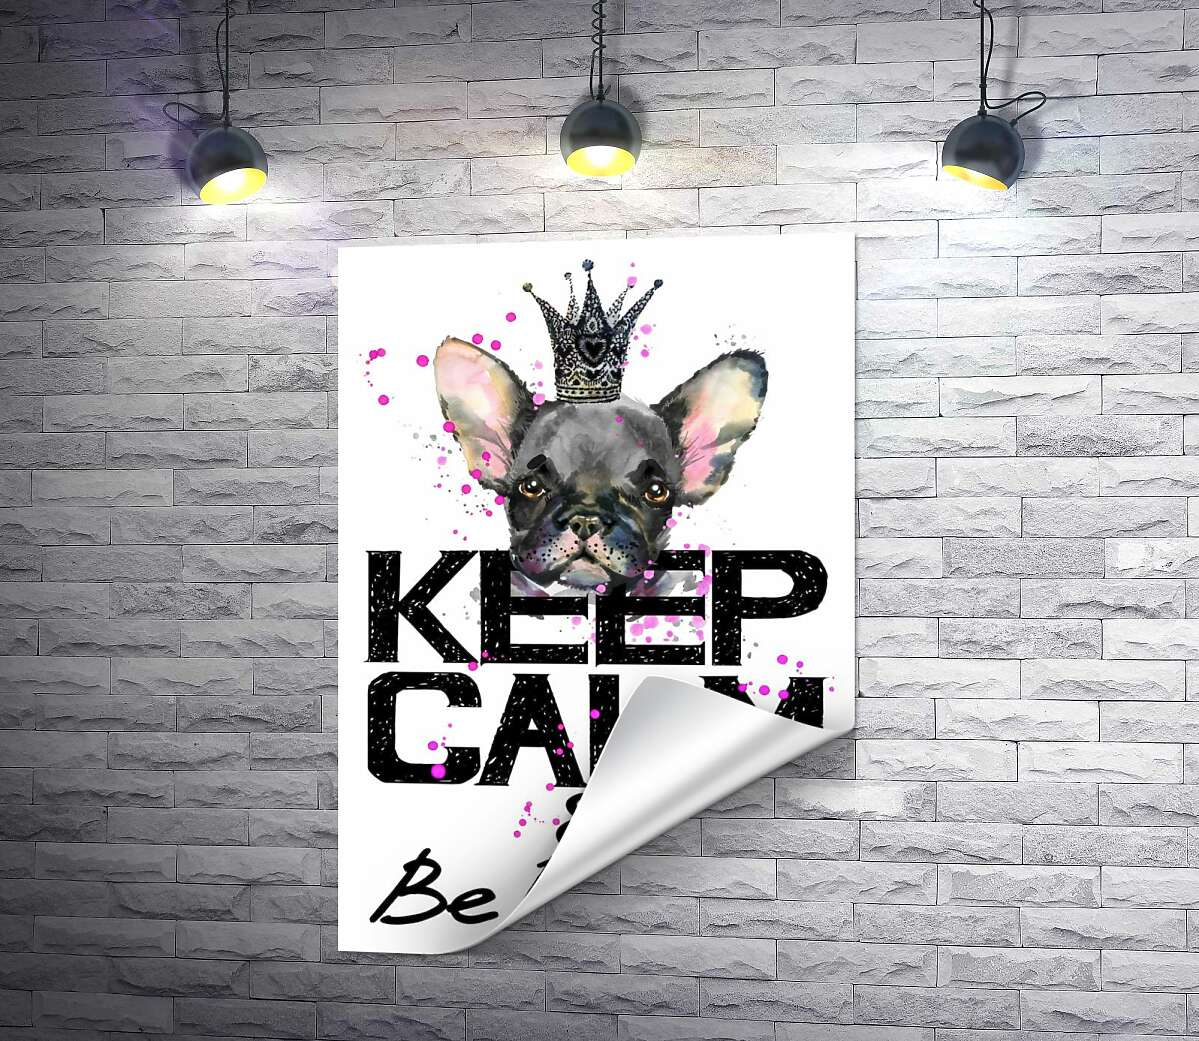 друк Голова бульдога видніється над написом "keep calm and be princess"